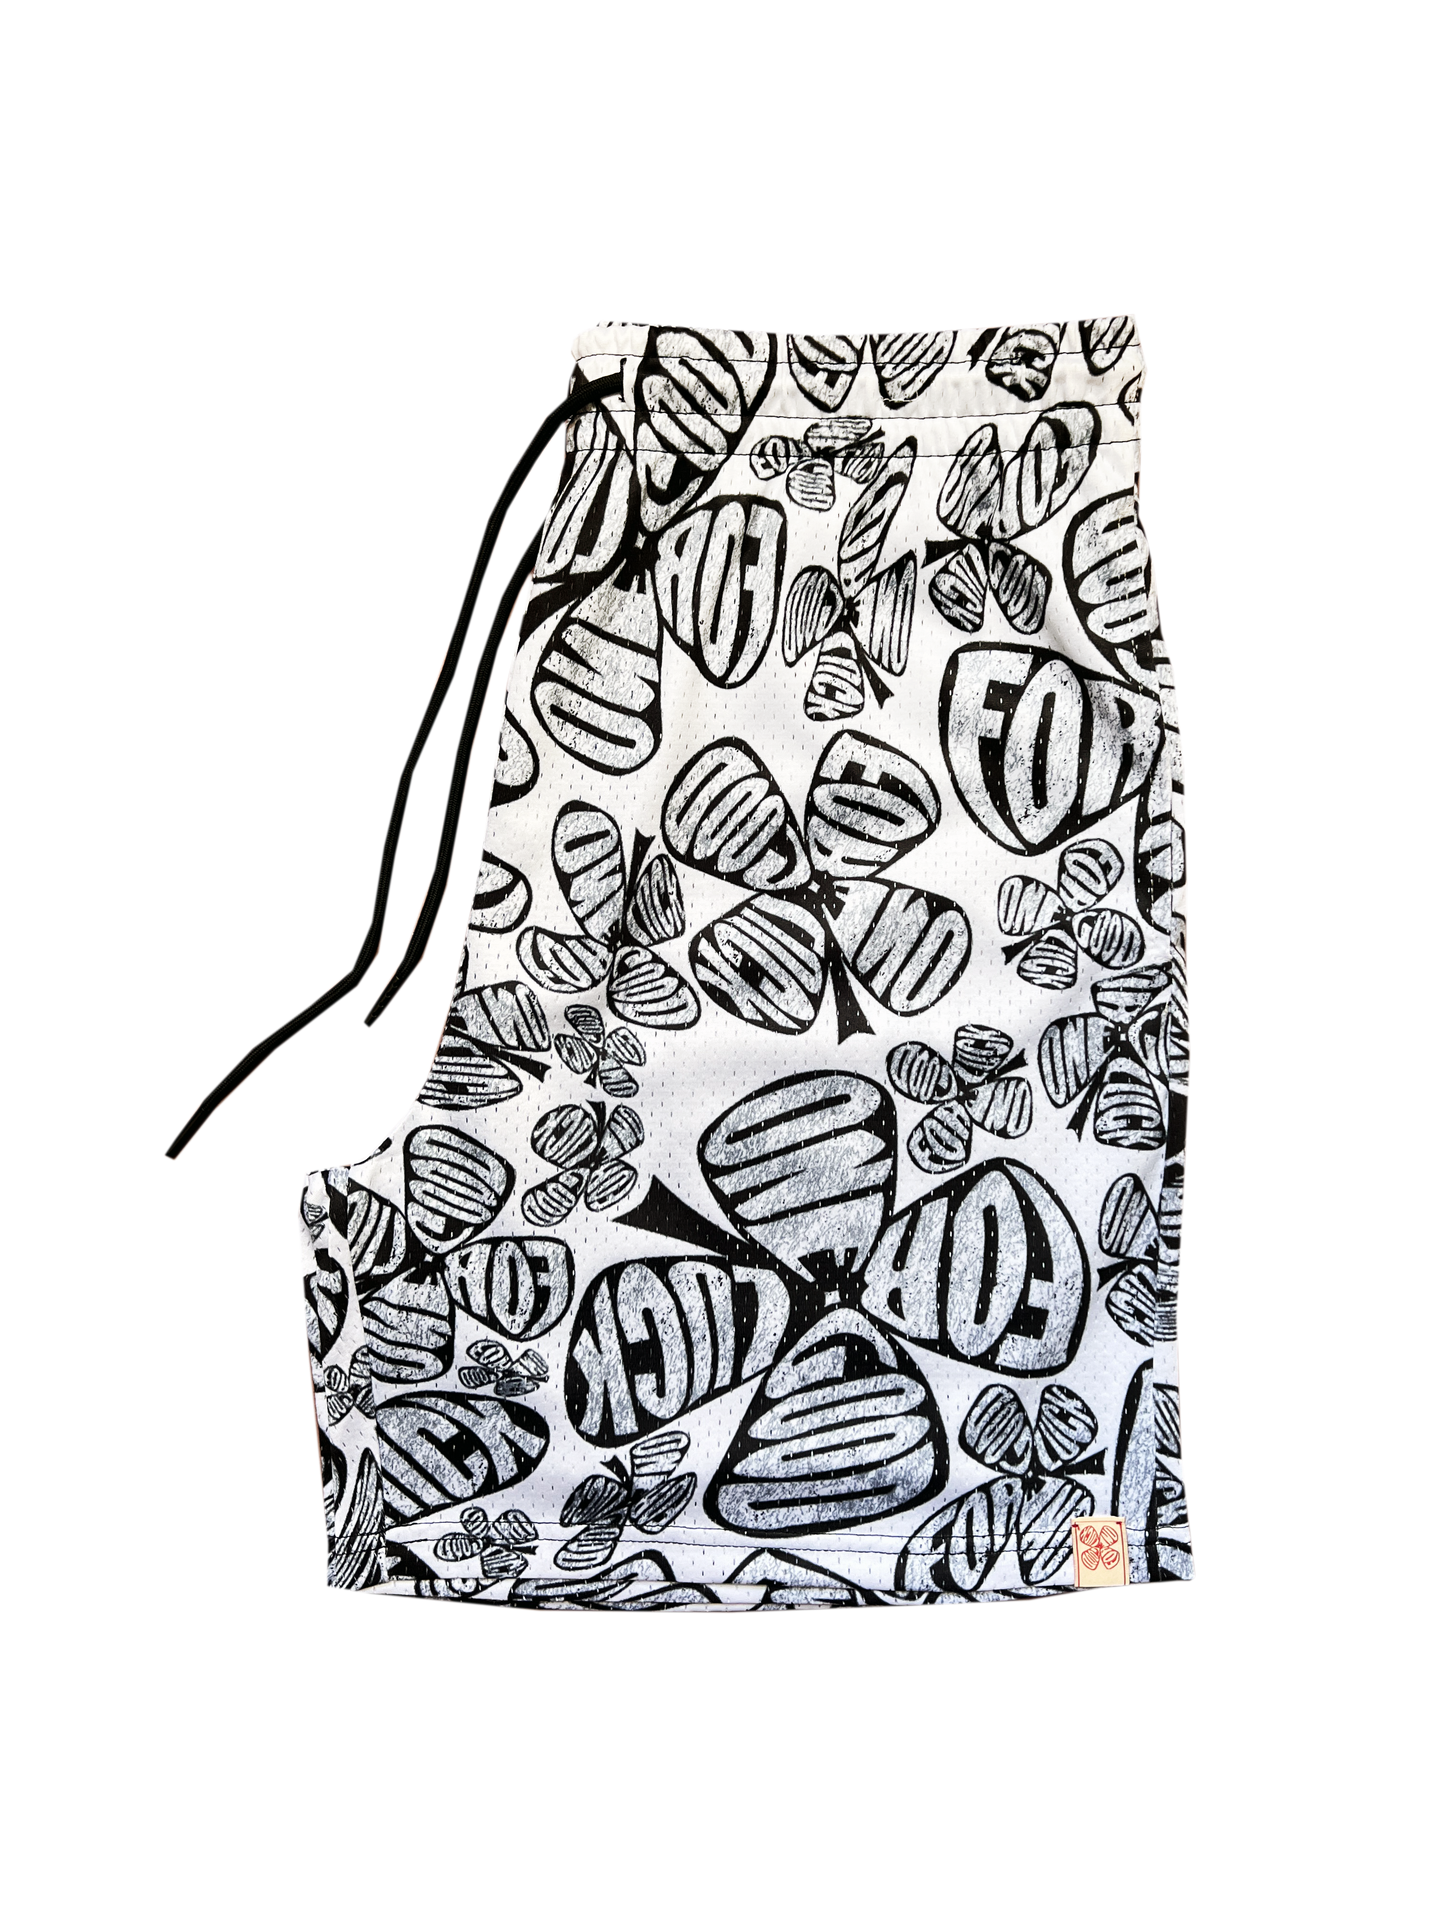 signature print mesh shorts / zebra